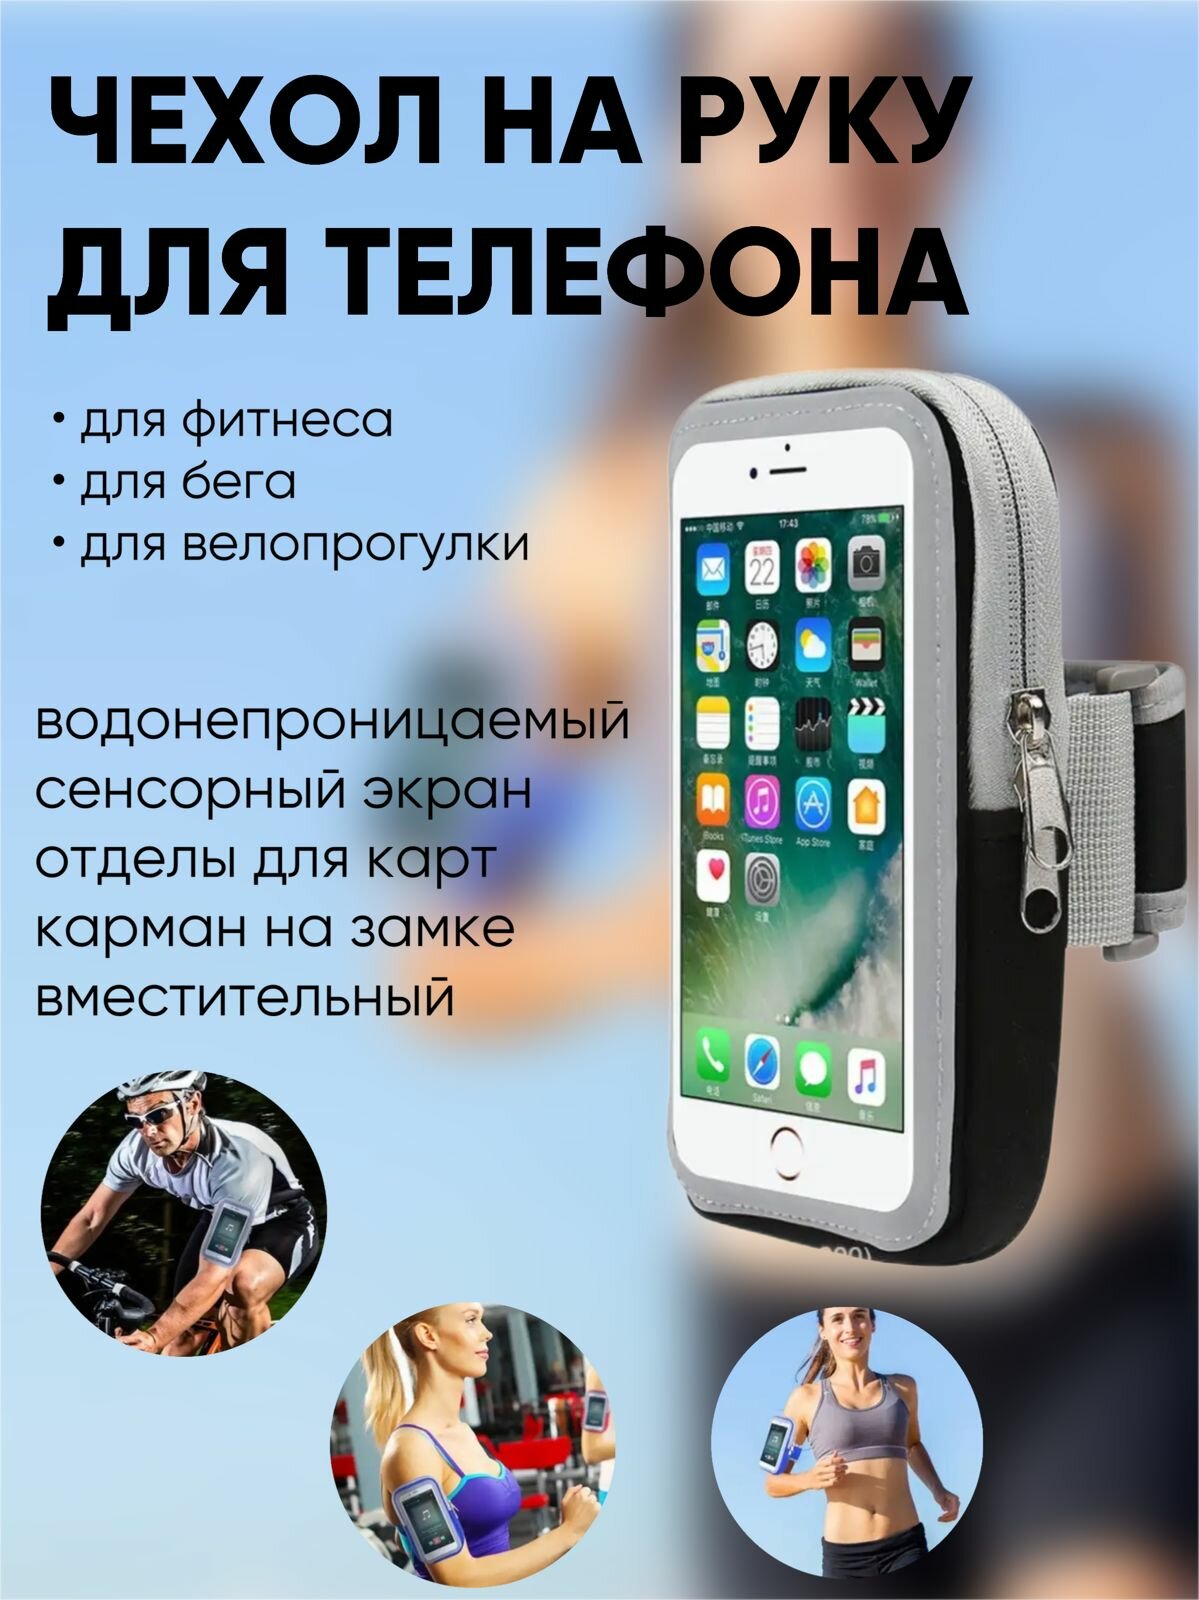 Спортивный чехол на руку для телефона/ сумка для телефона на плечо / сумка на запястье/ черная с серым